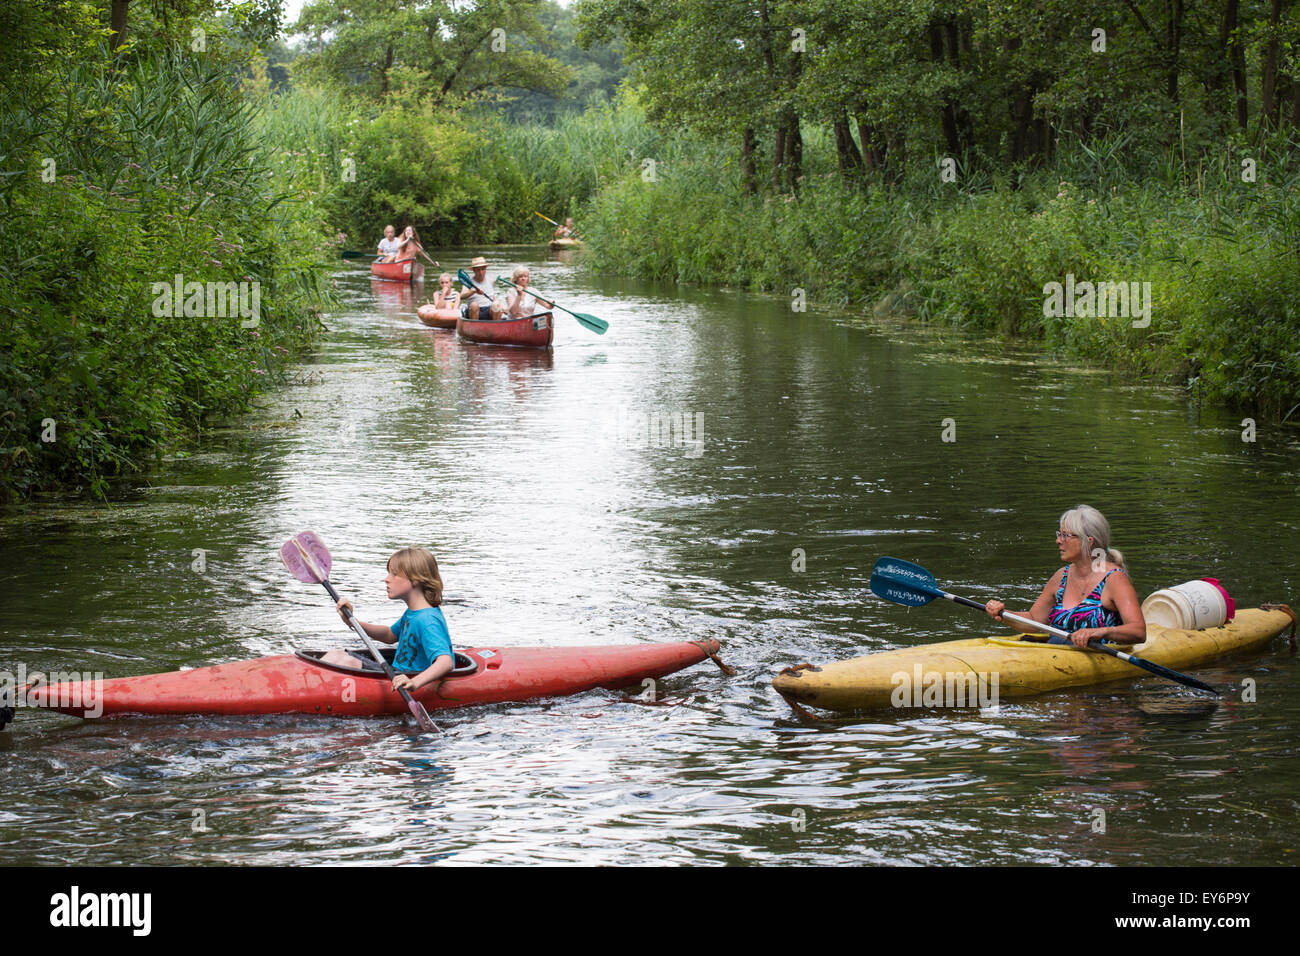 Kanu und Kajak fahren Touristen vorbei am mäandernden Fluss "Dommel" in den  Niederlanden, Europa Stockfotografie - Alamy